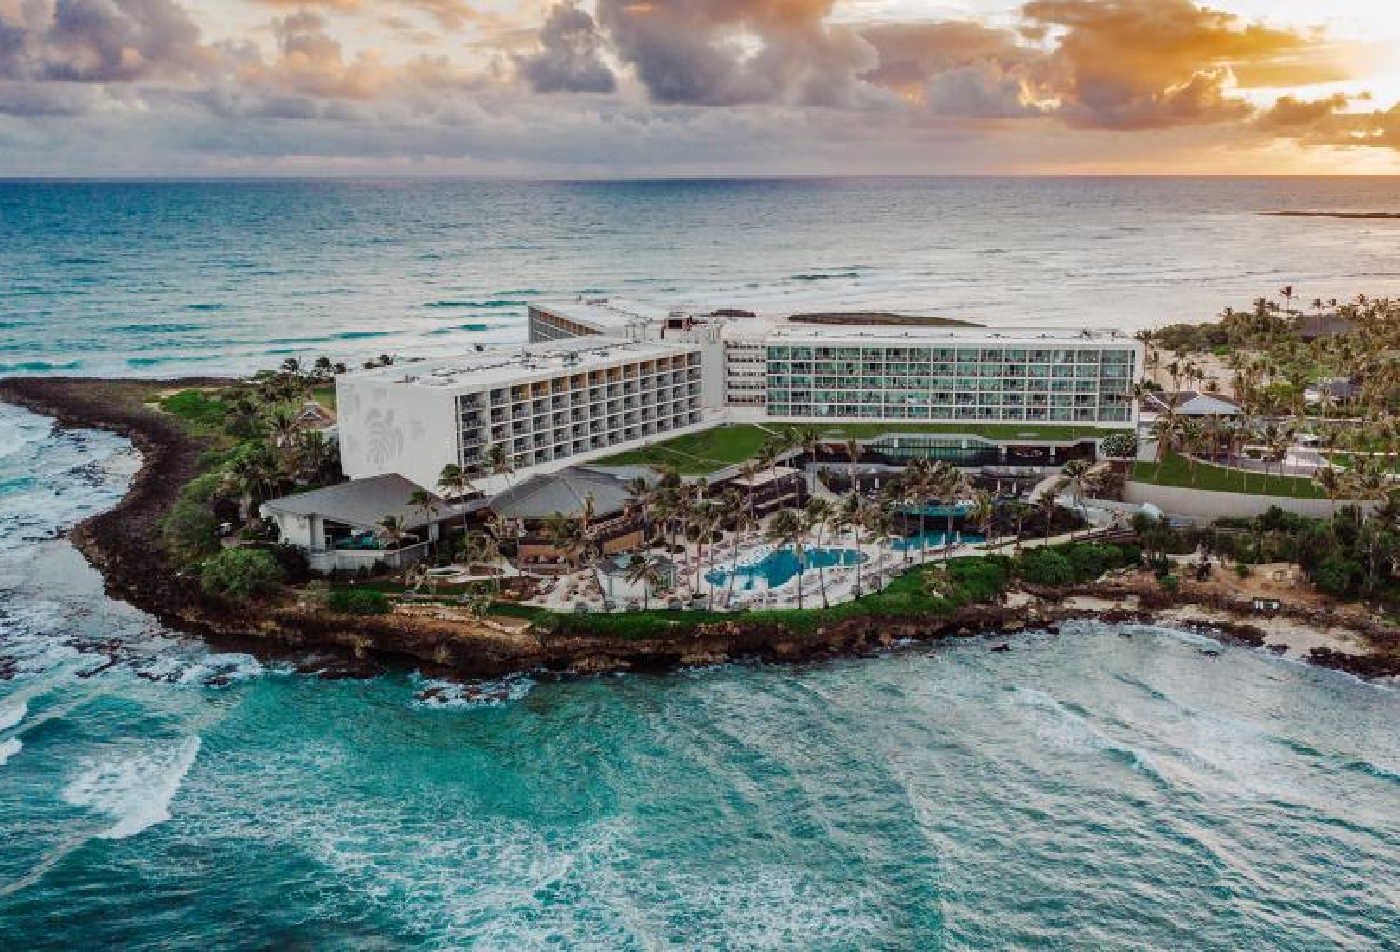 Turtle Bay Resort, Oahu resorts, Hawaiian resorts, best resorts in Oahu, best resorts in Hawaii